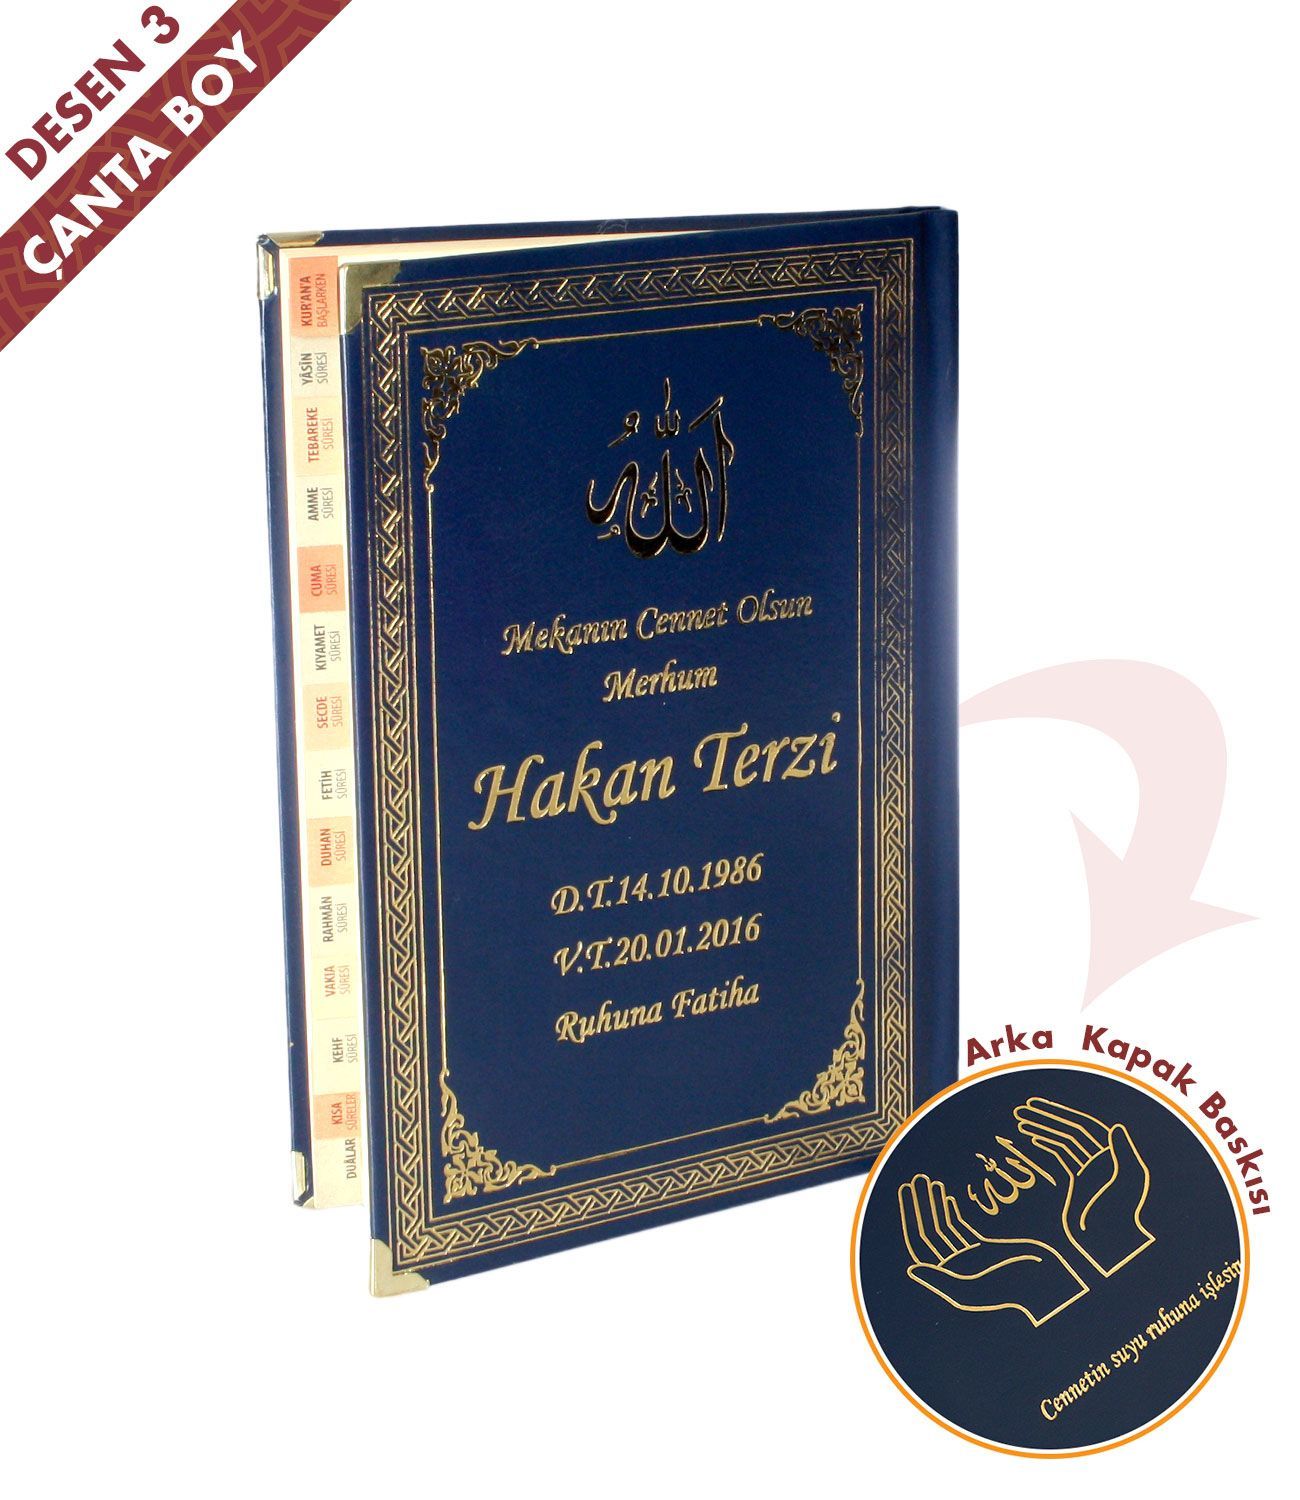 İsim Baskılı   Ciltli Yasin Kitabı   Osmanlı Desen   Lacivert   Çanta Boy